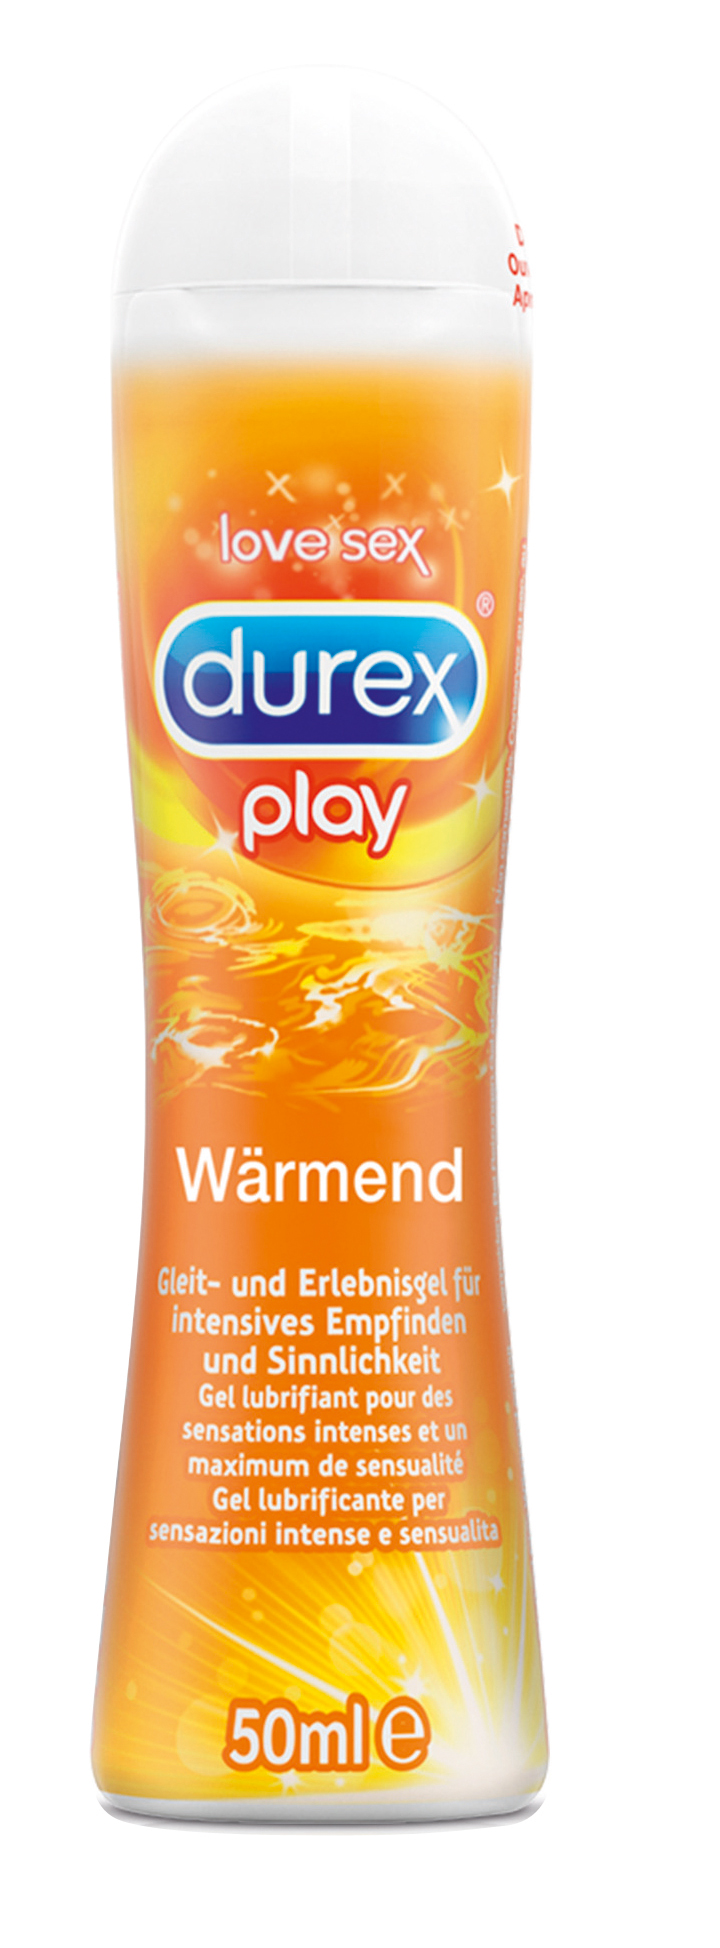 DUREX play Wärmend 50ml